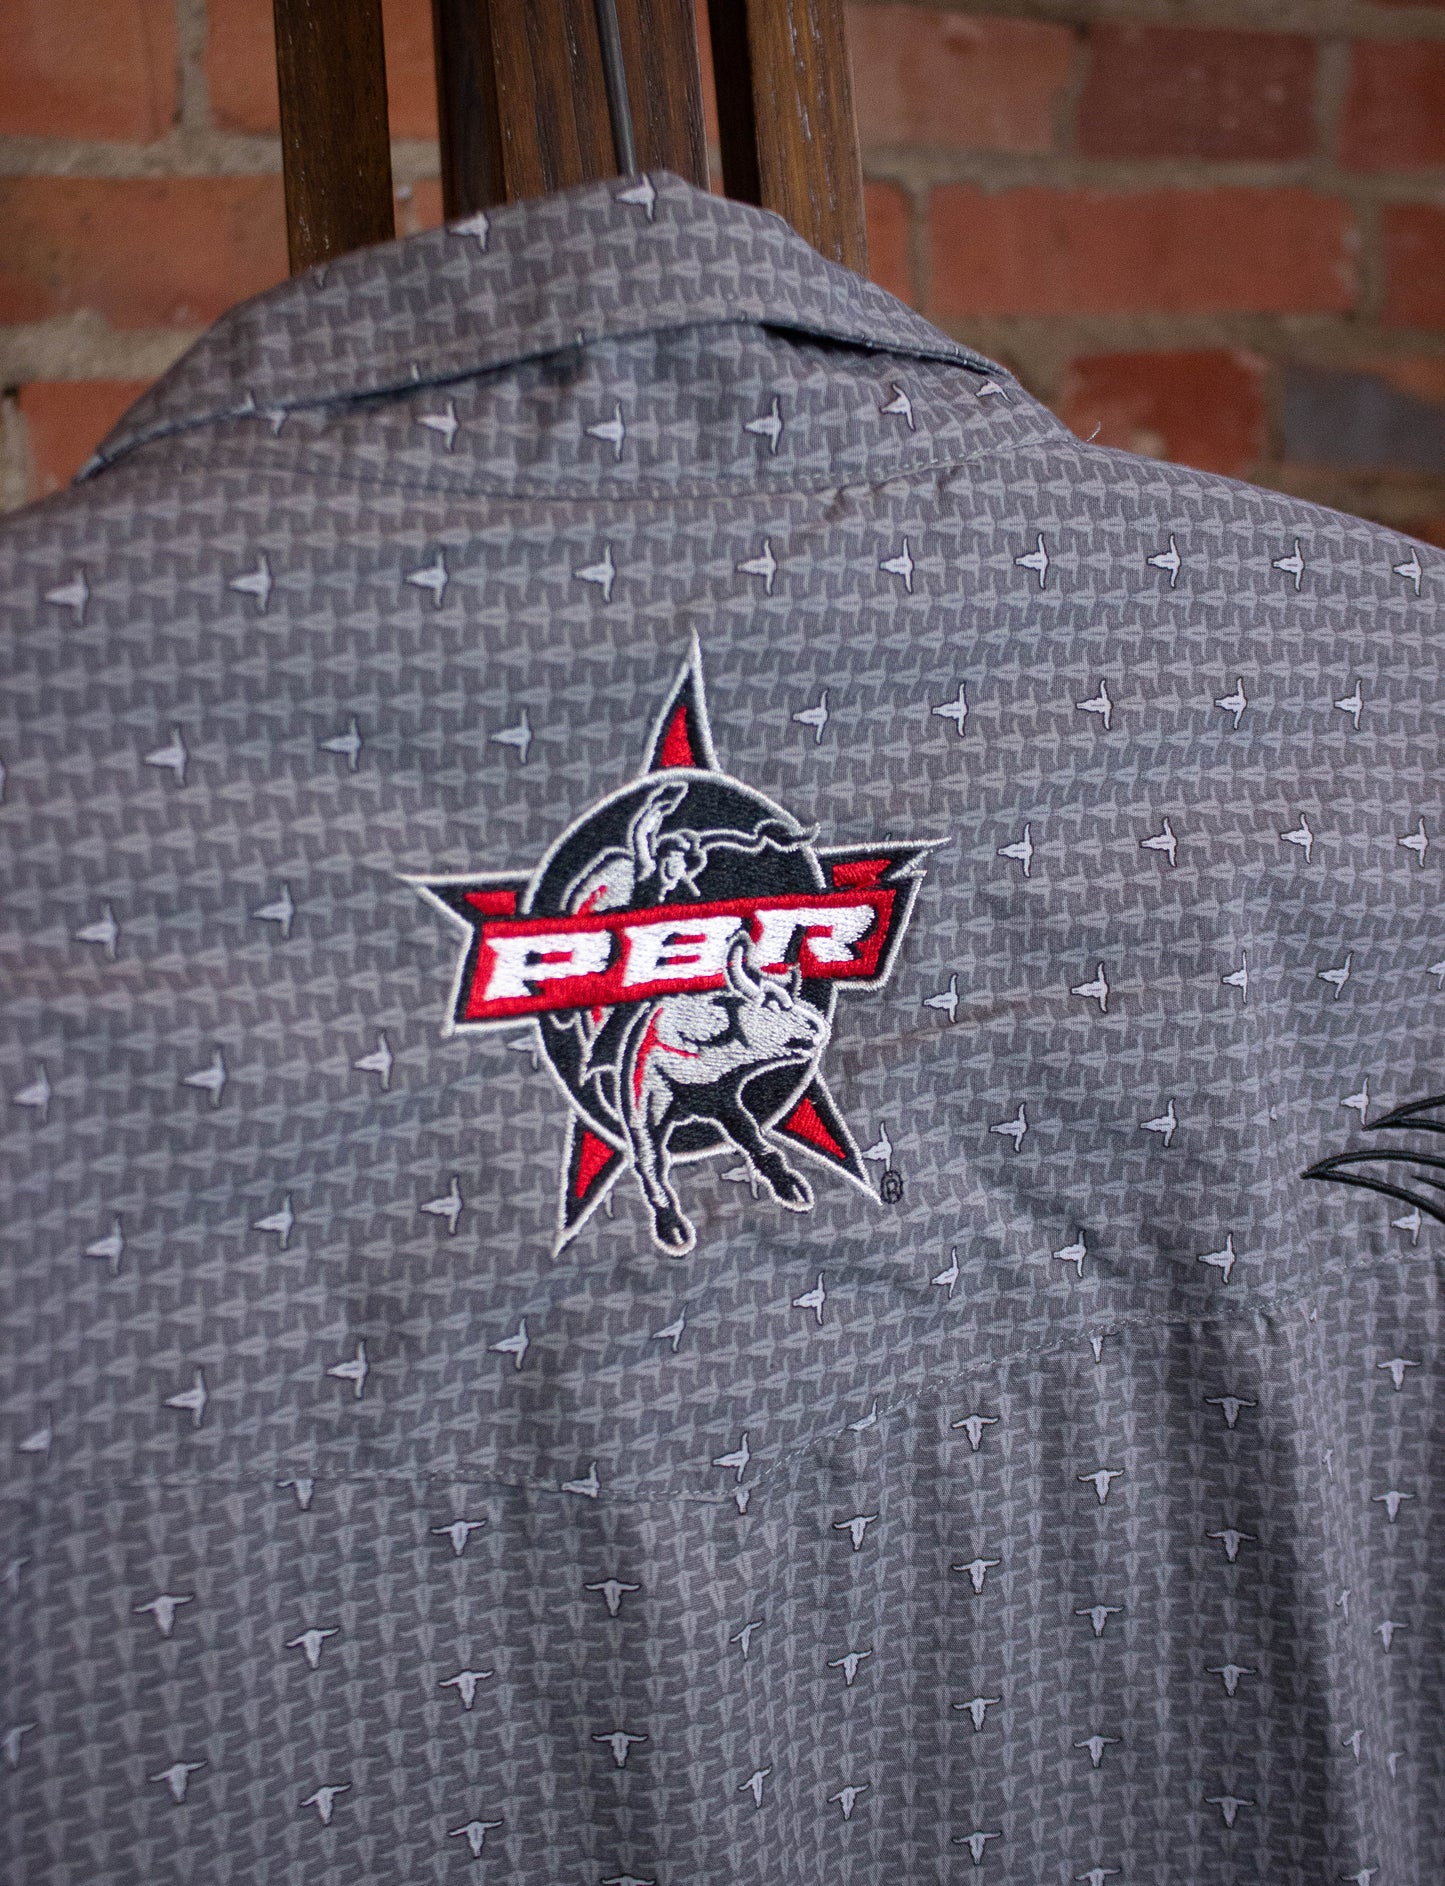 Wrangler PBR Button Up Shirt Gray XL